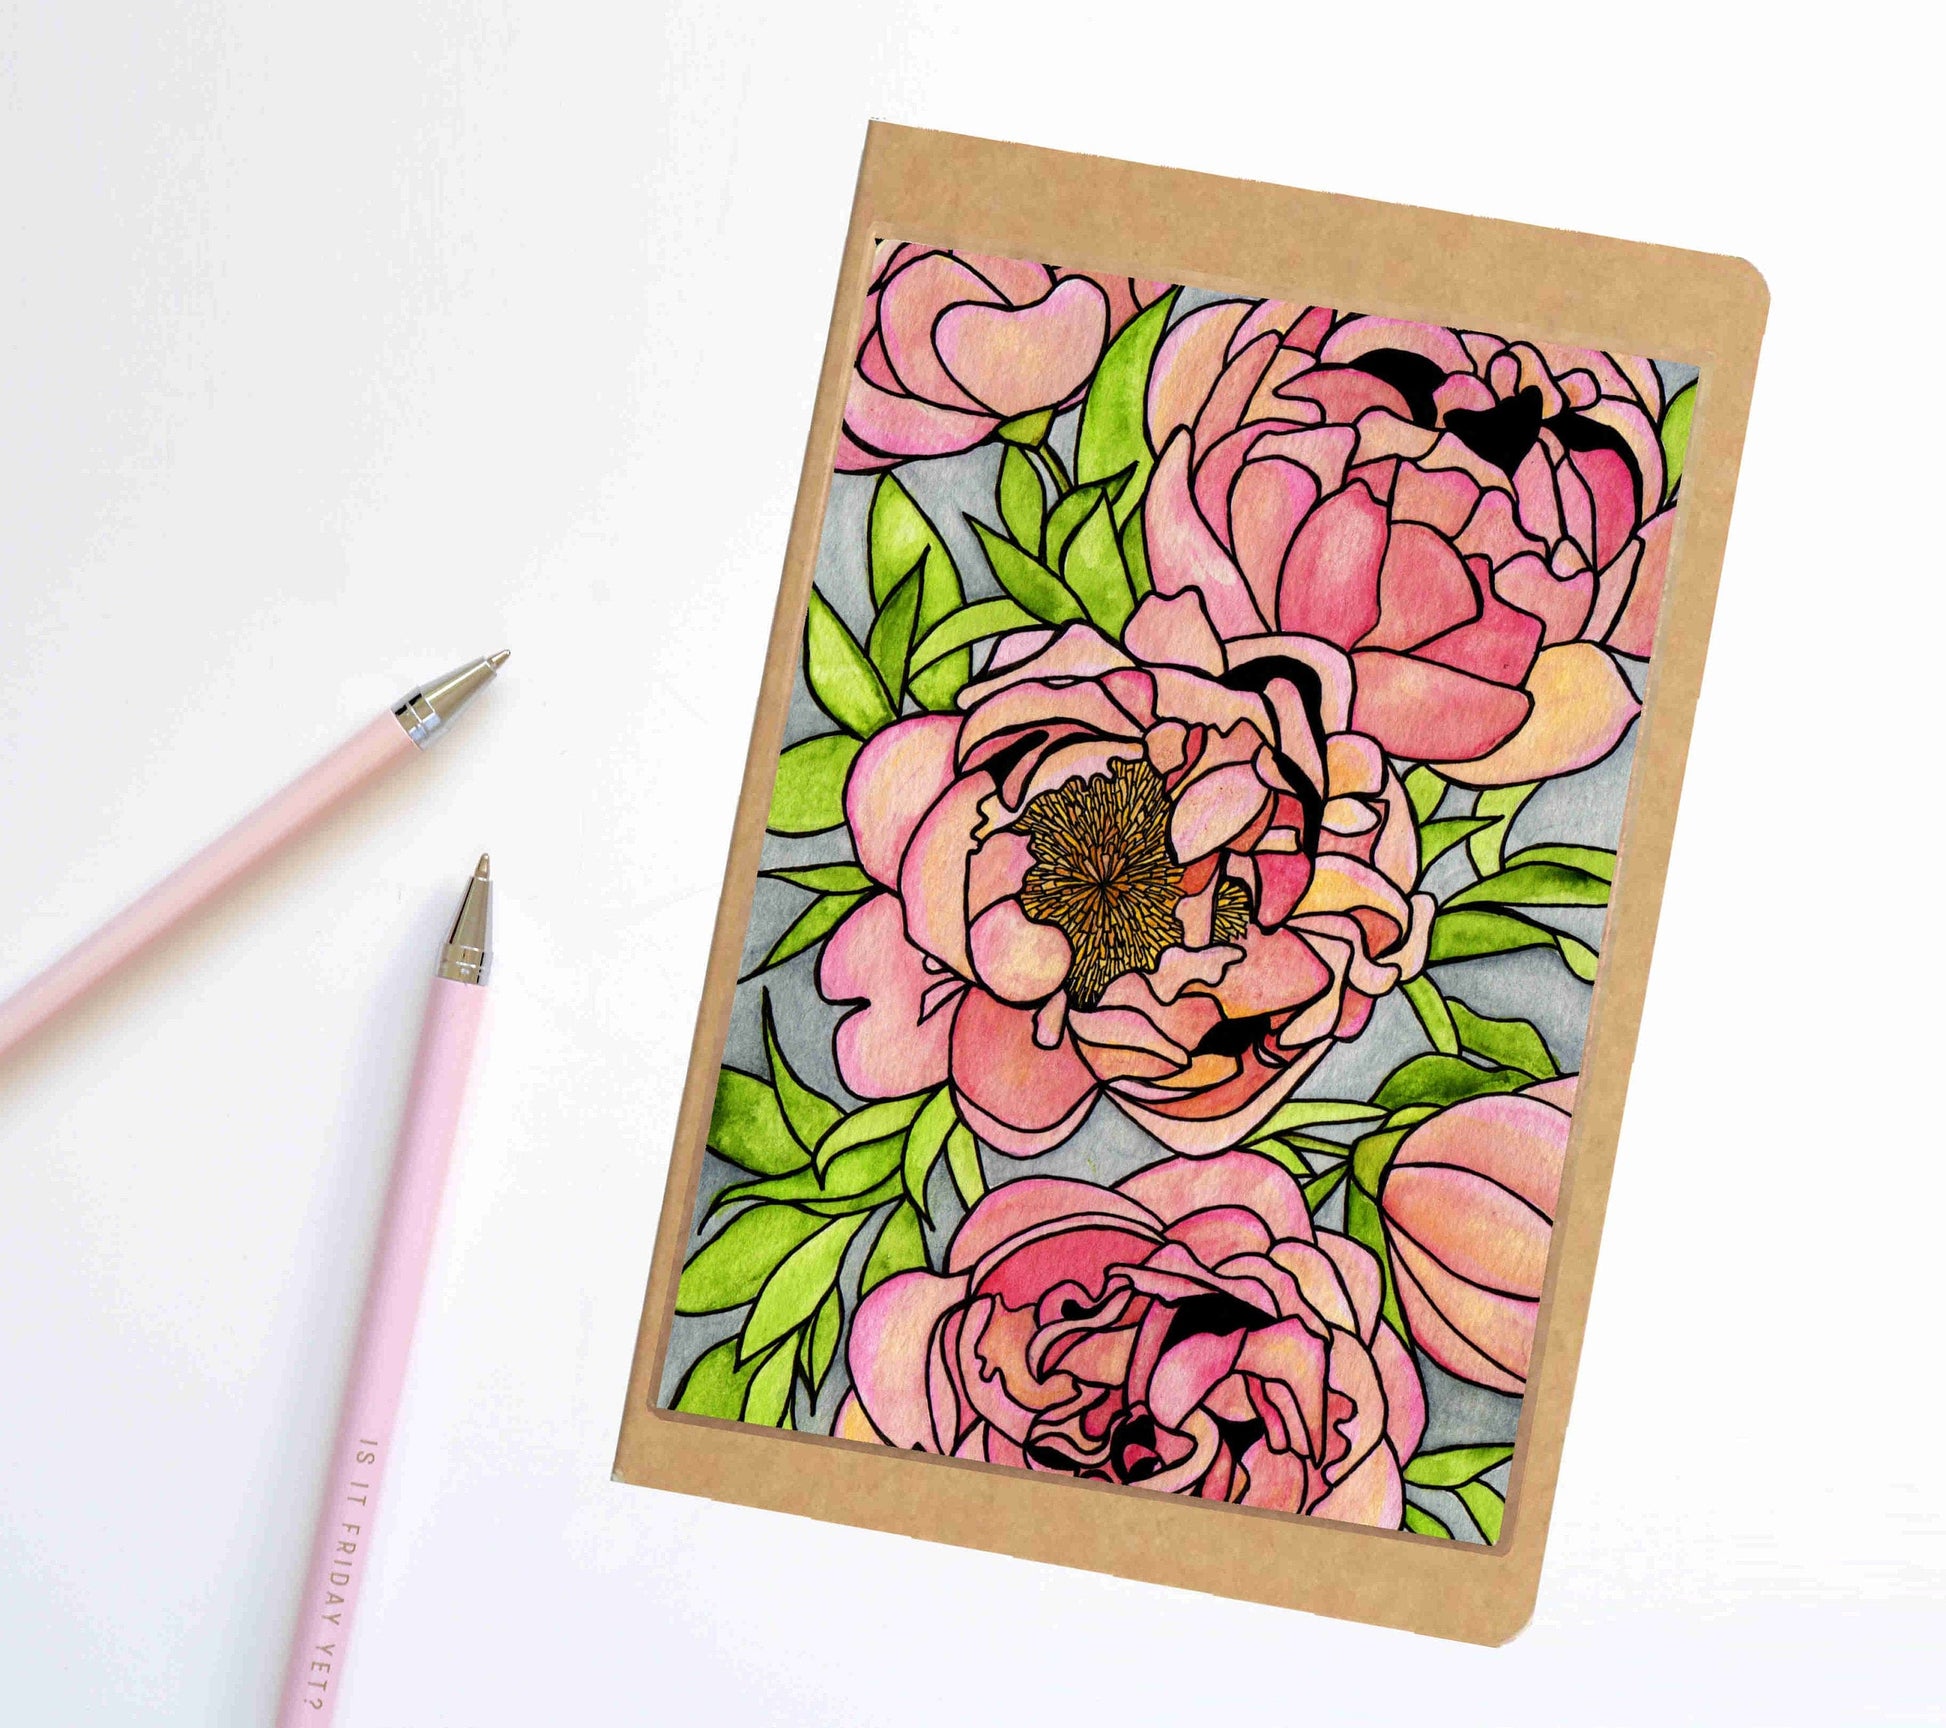 PinkPolish Design Notebook "Floral Carpet" Nature Inspired Notebook / Sketchbook / Journal